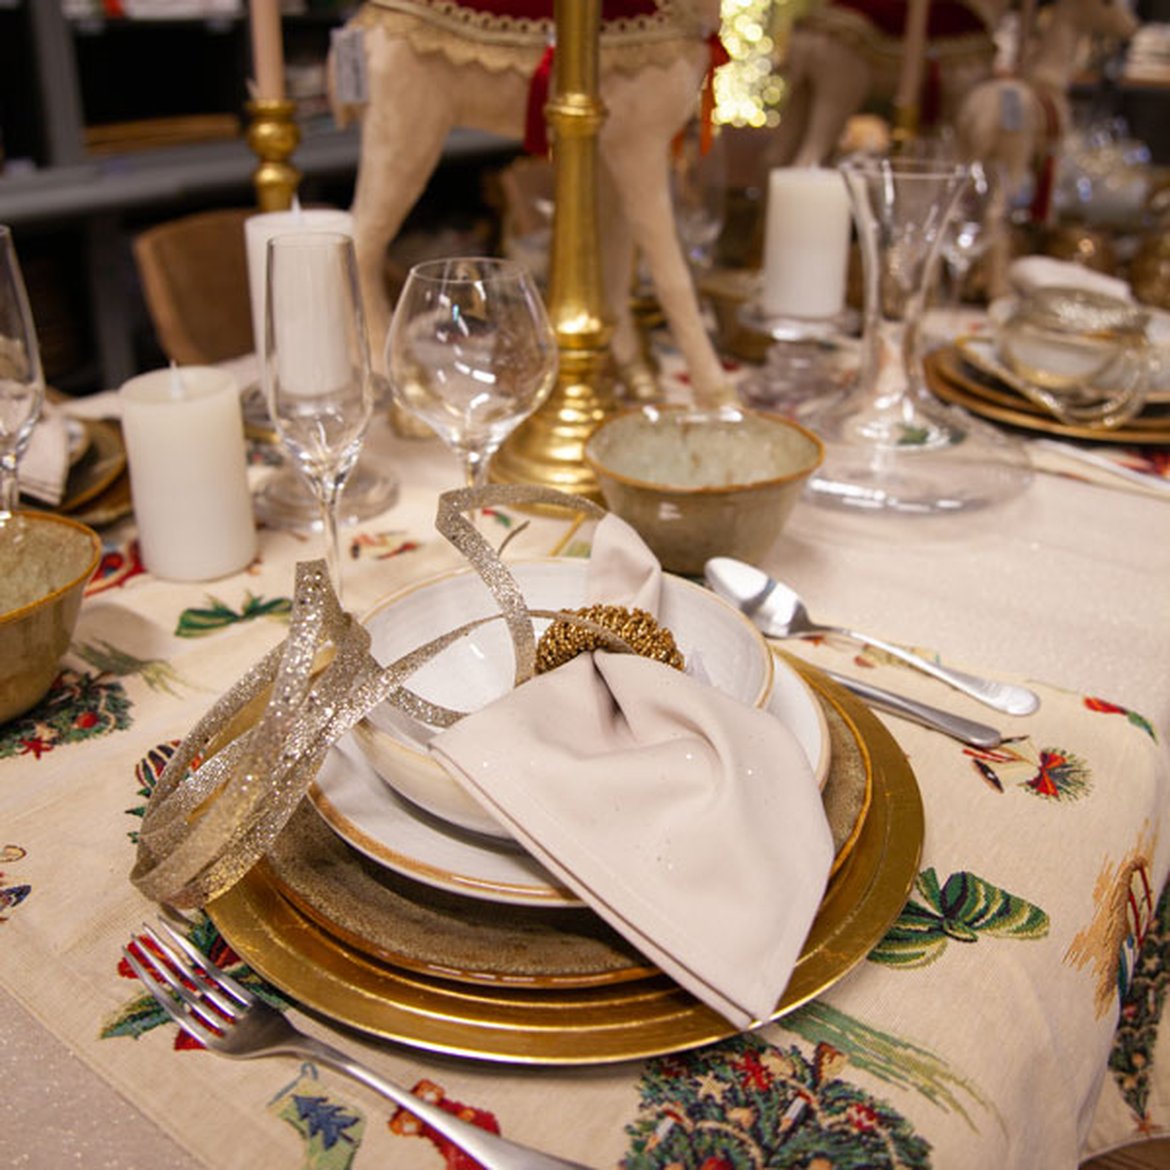 Shop the look - Table de Noël "Forêt dorée" couverts cuivrés et serviette en tissu beige